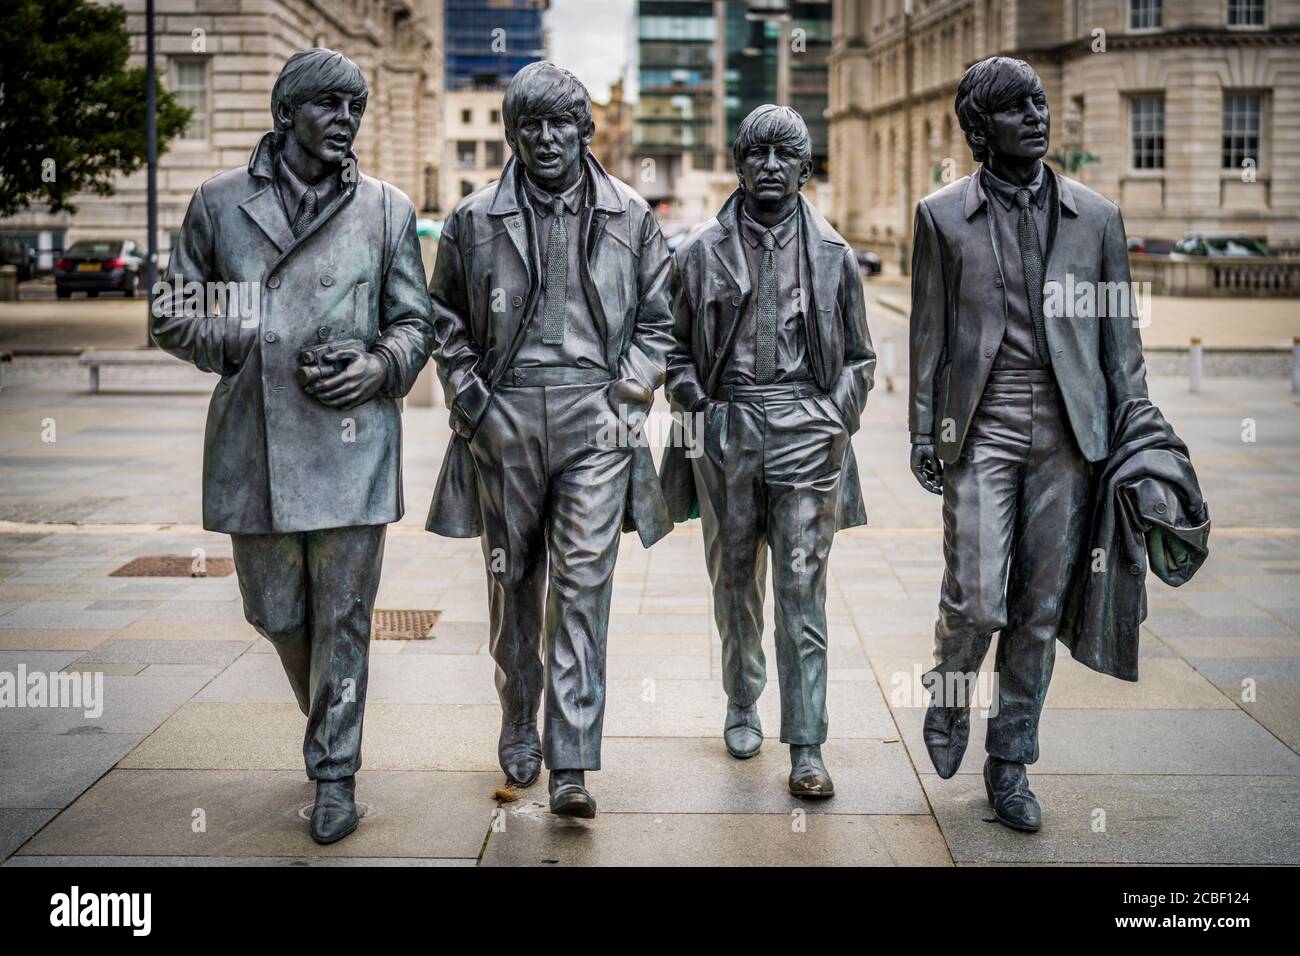 La statua dei Beatles Liverpool - statue a grandezza naturale dei Fab Four sul lungomare di Liverpool a Pier Head, lo scultore Andrew Edwards eretto nel 2015. Foto Stock